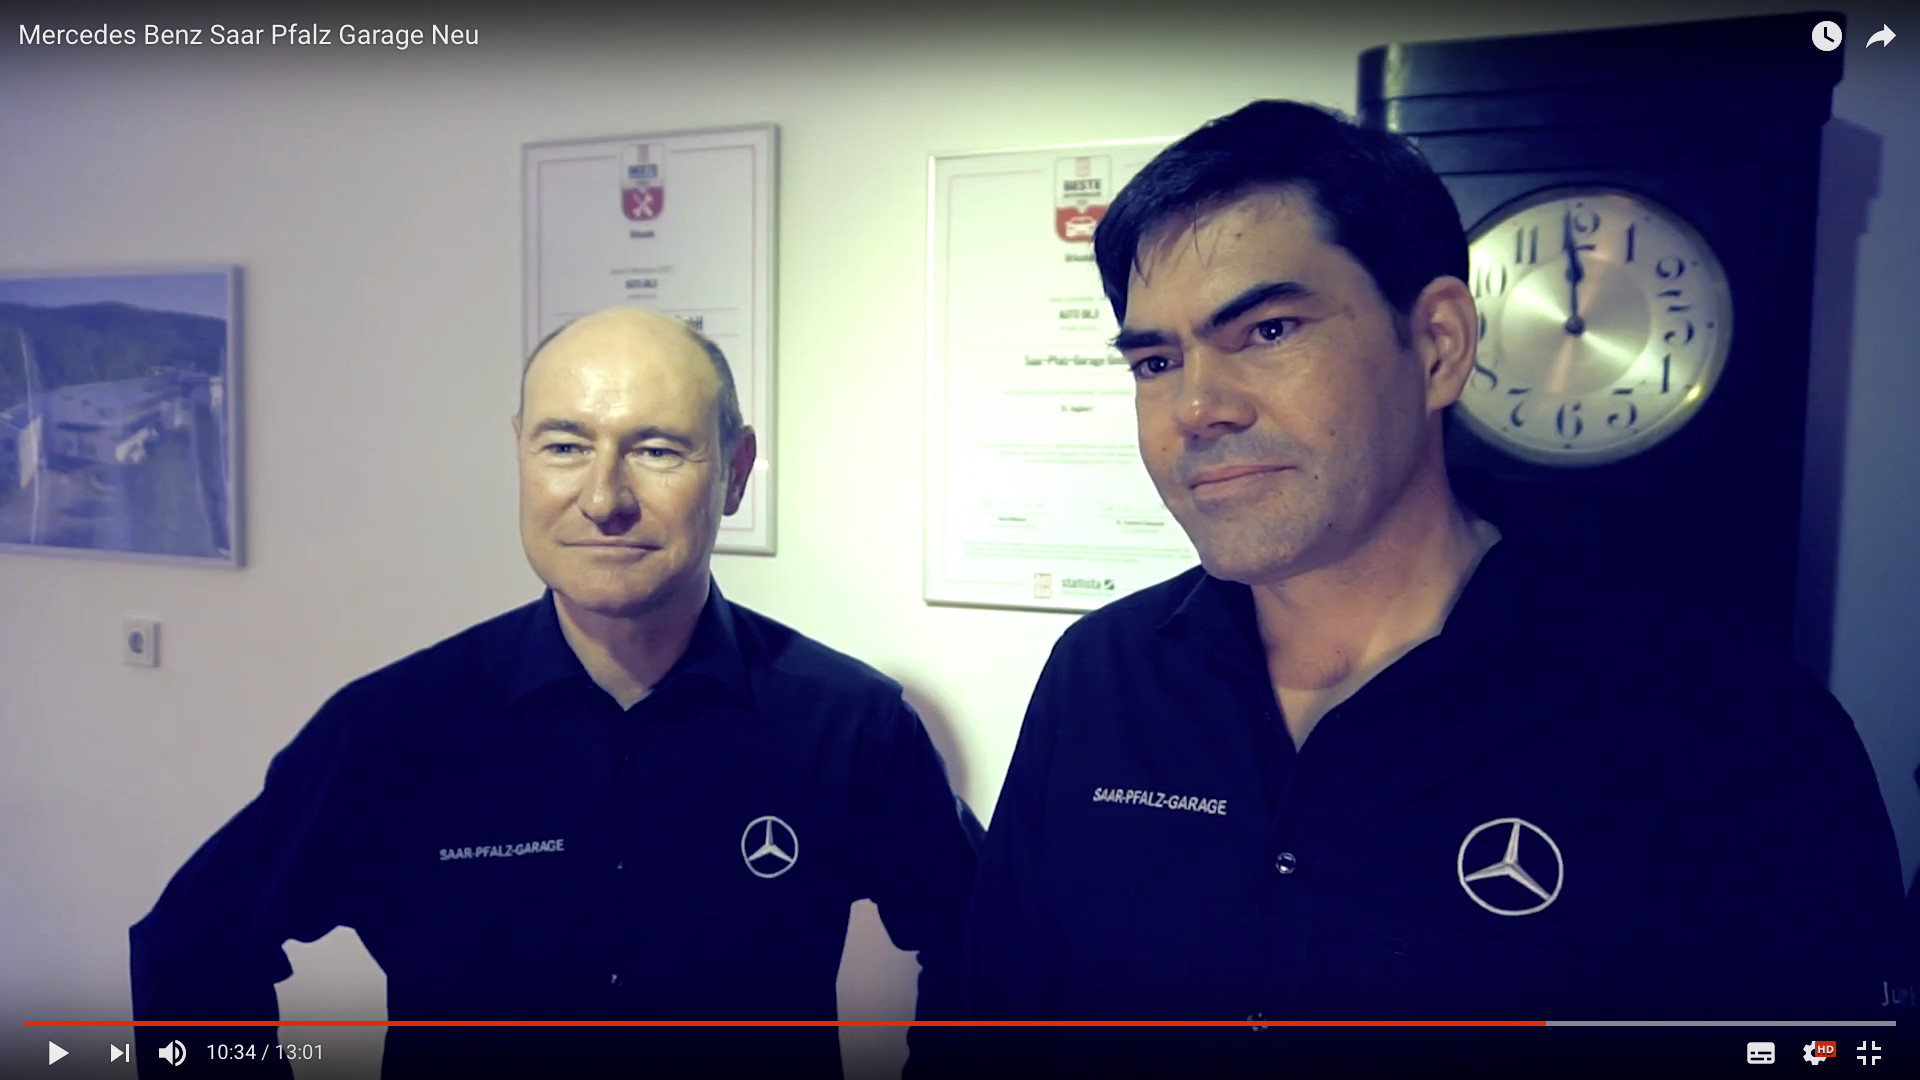 Saar Pfalz Garage
 Mercedes Benz Saar Pfalz Garage – Die Nummer 1 für